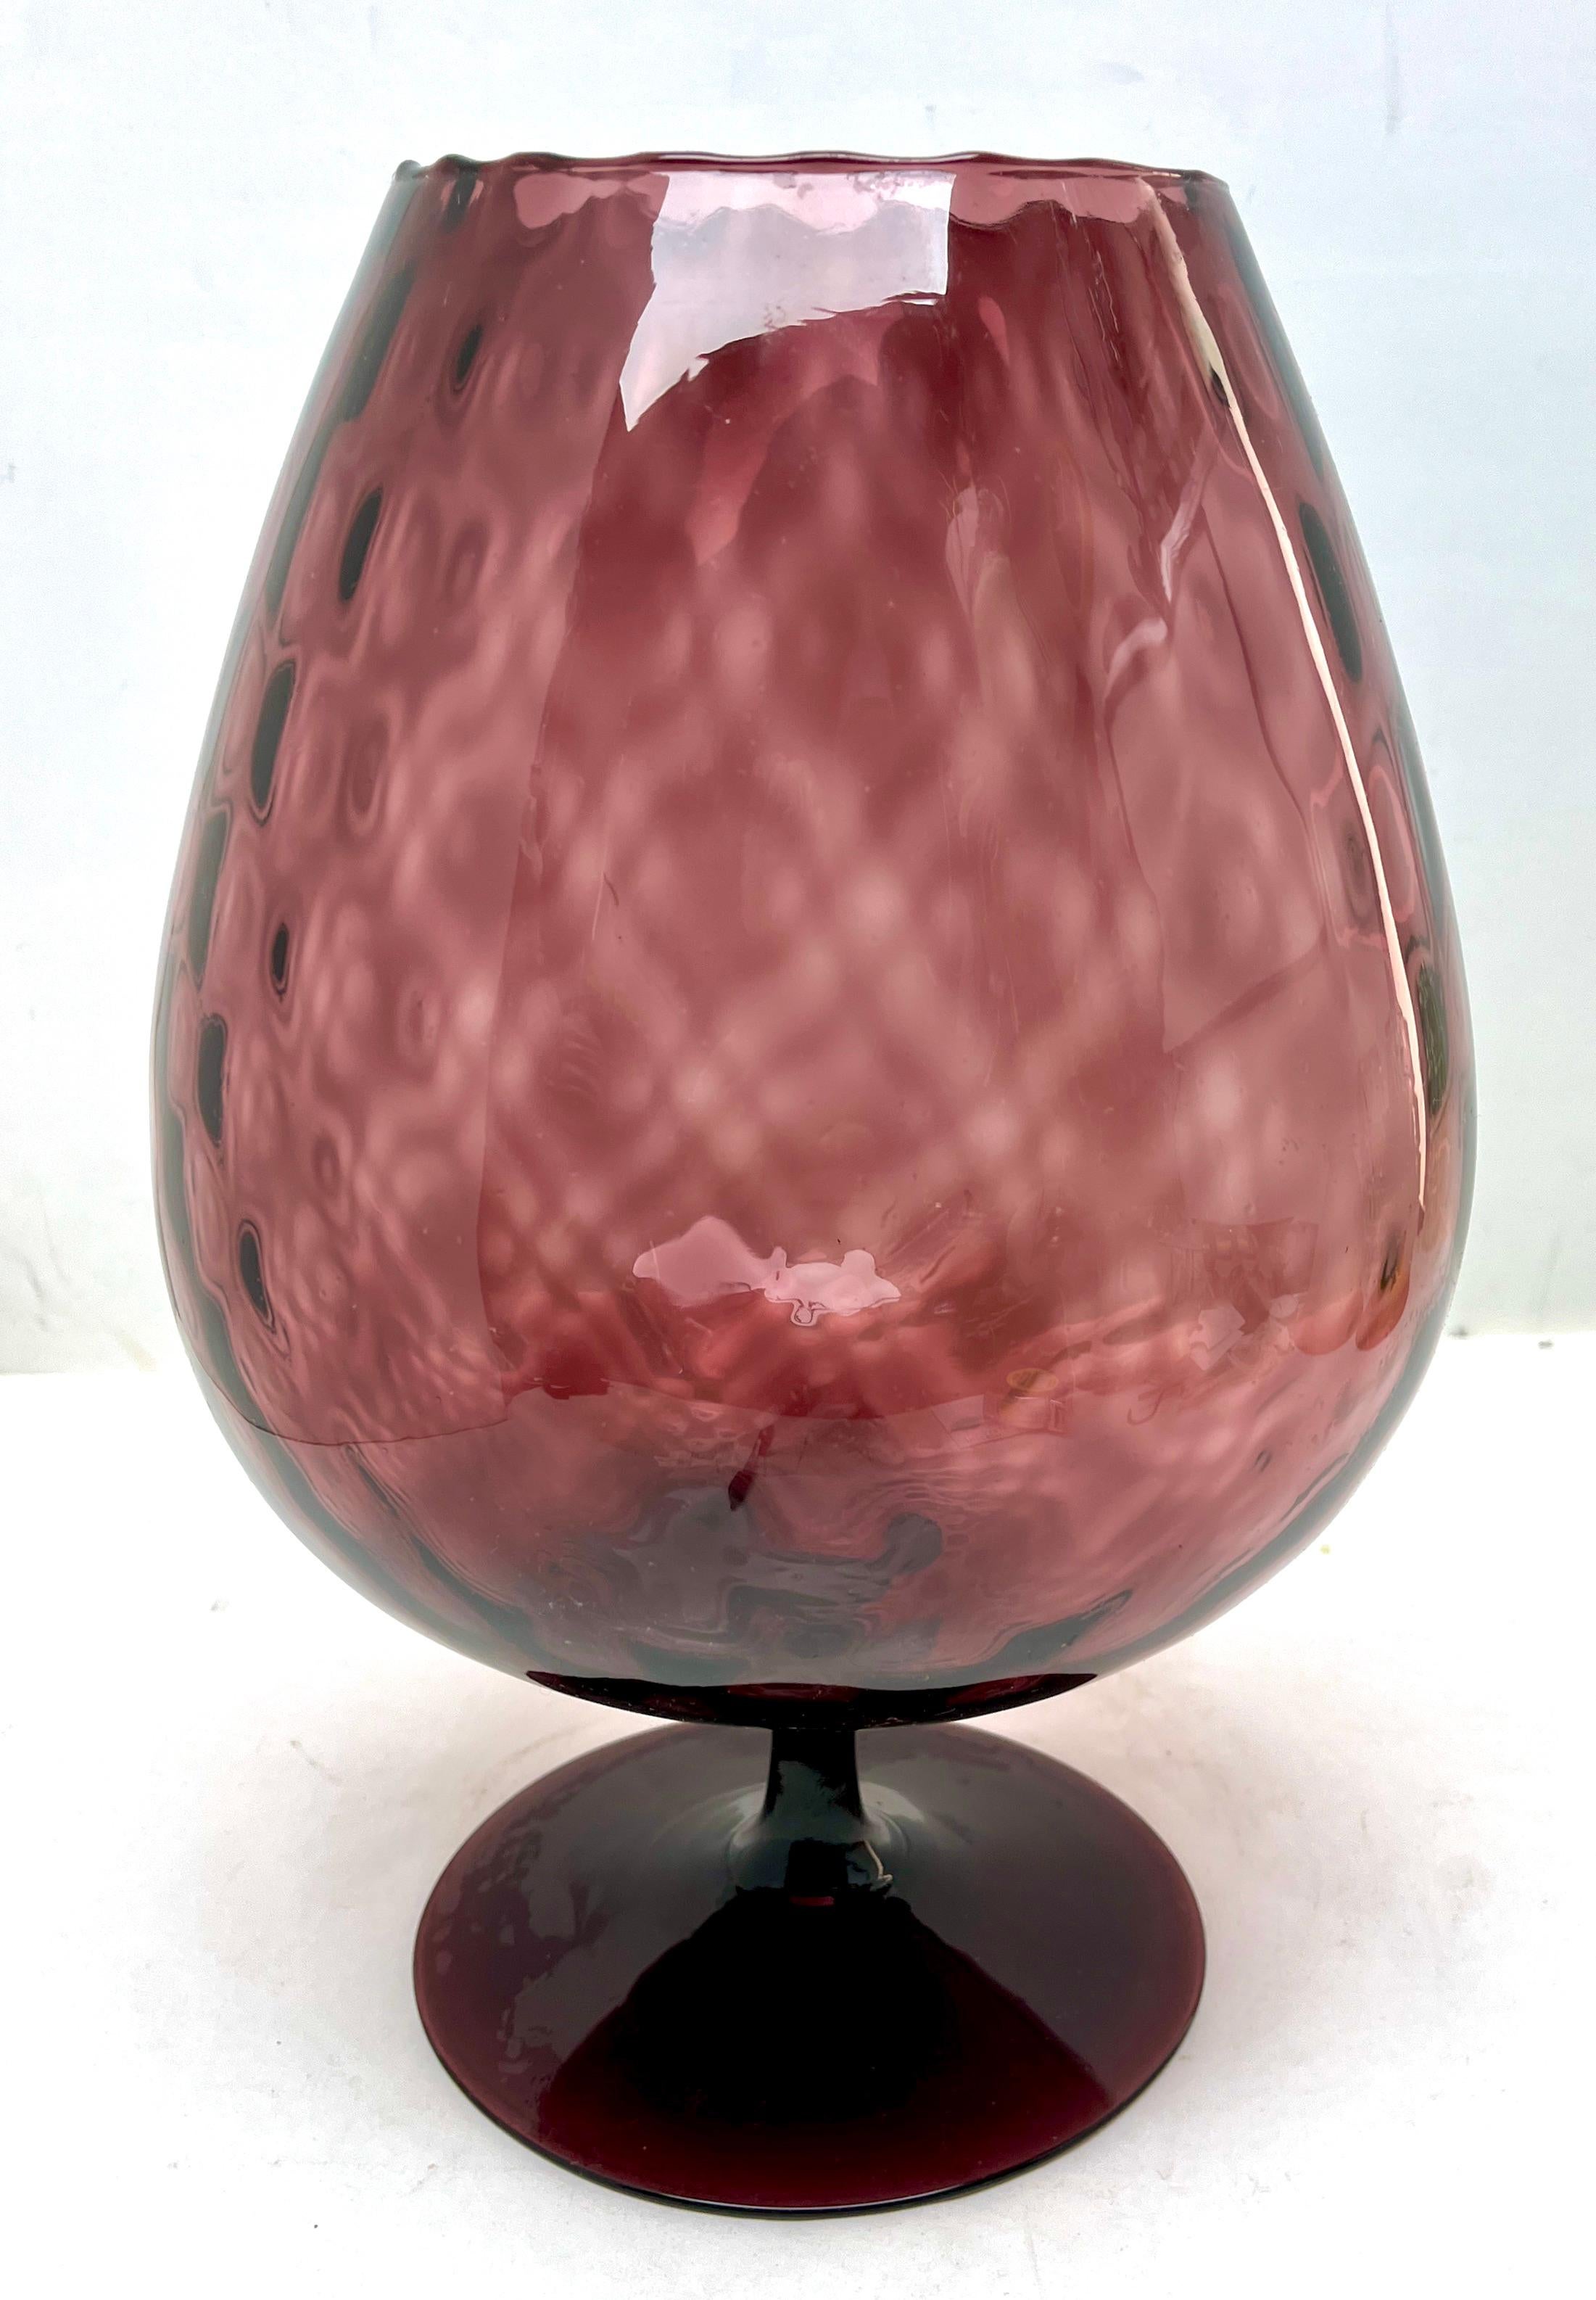 Opaline di Florence (Empoli) opalisierende italienische Kunstglasvase der späten 1950er oder frühen 1960er Jahre. 

Wunderschöner mundgeblasener Opal und handapplizierter Einfuß
Maße: 32 cm hoch, Durchmesser 20 cm

Das Stück ist in ausgezeichnetem